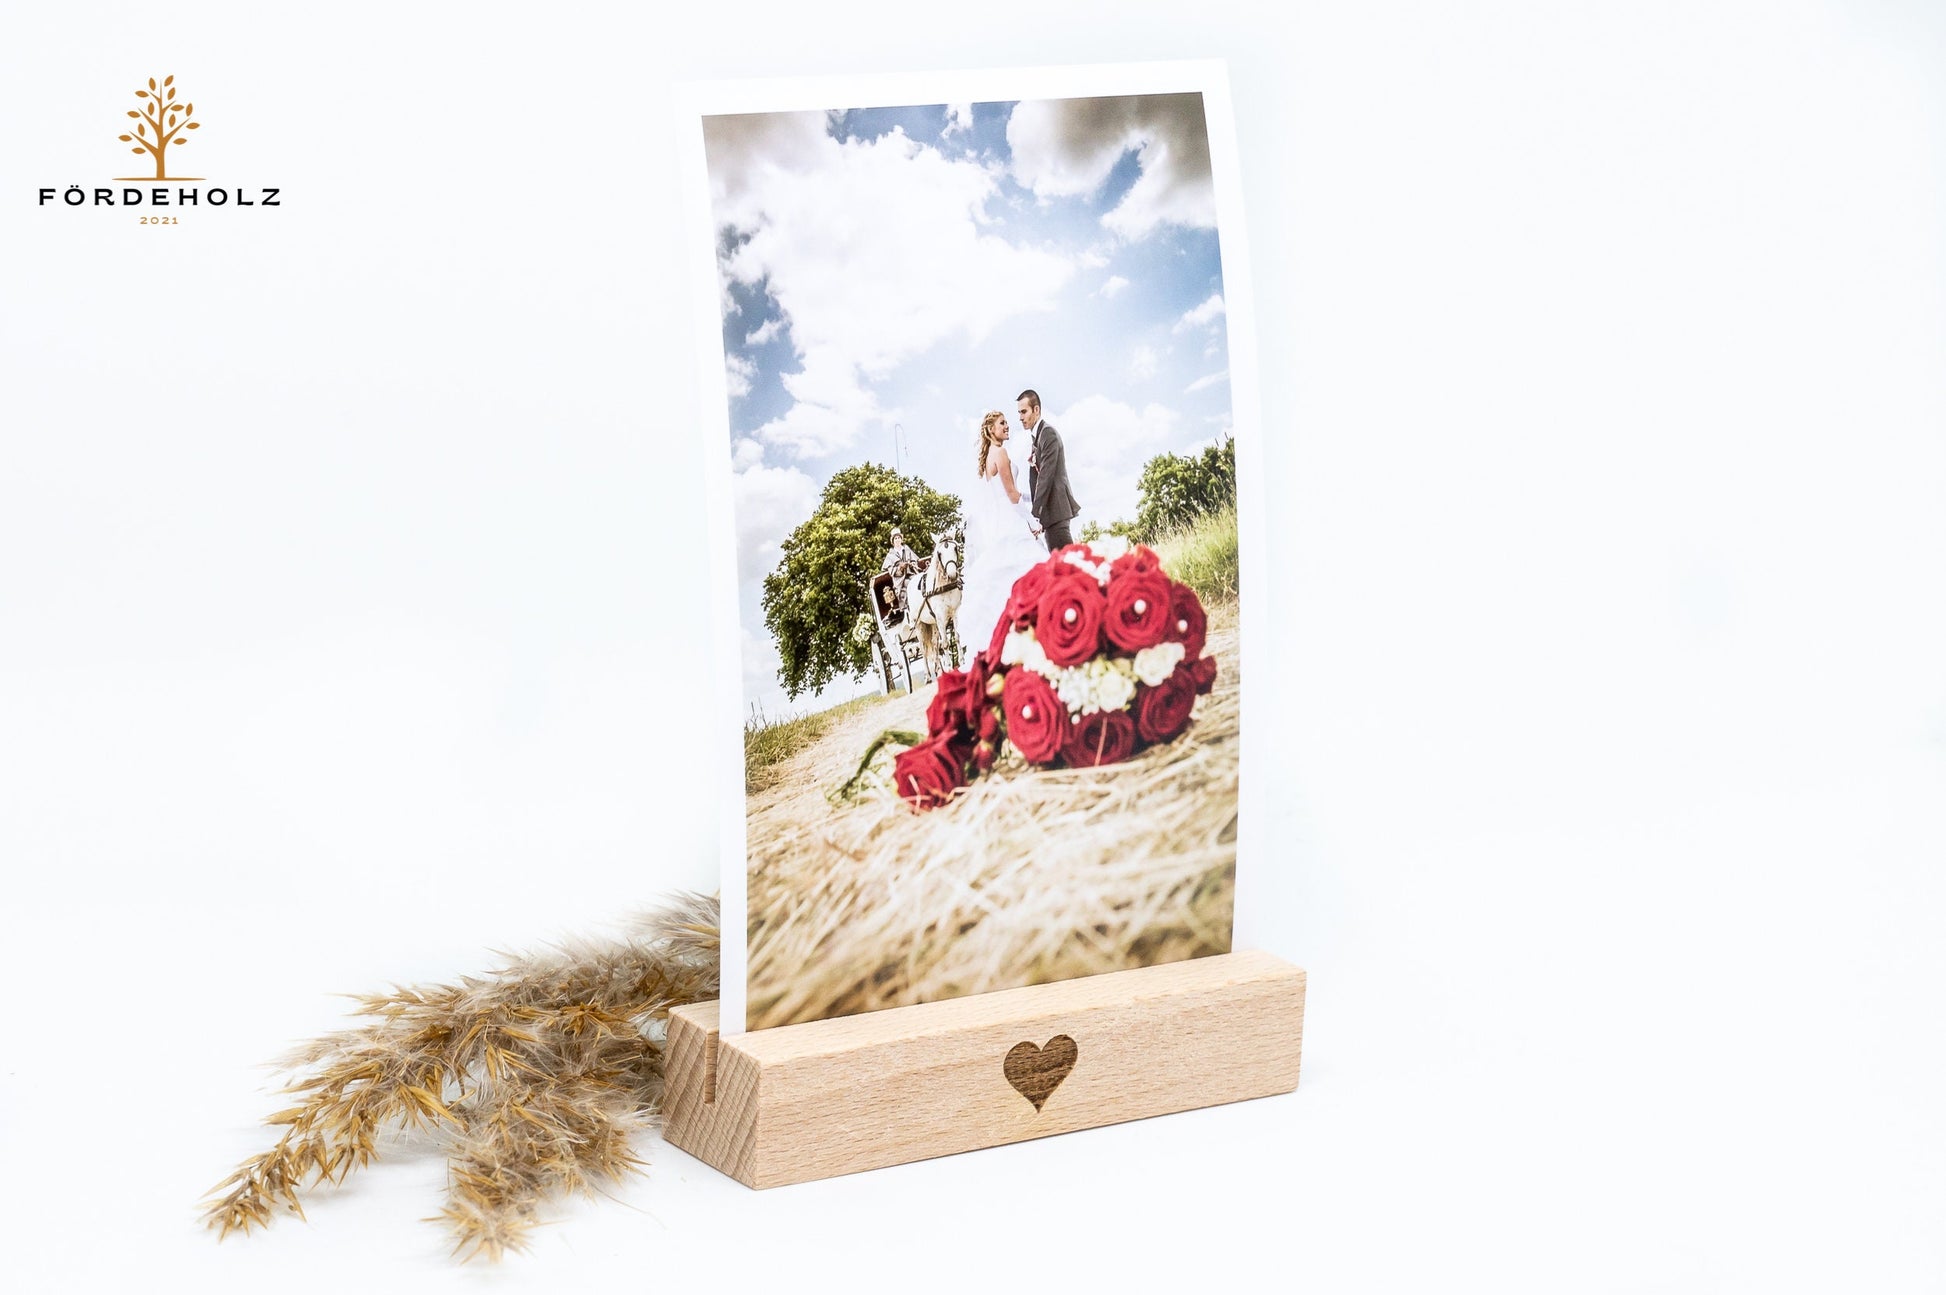 Foto- und Kartenhalter aus Holz, Holzkartenhalter, Kartenaufsteller, Buchenholz "Herz" Geschenk Valentinstag